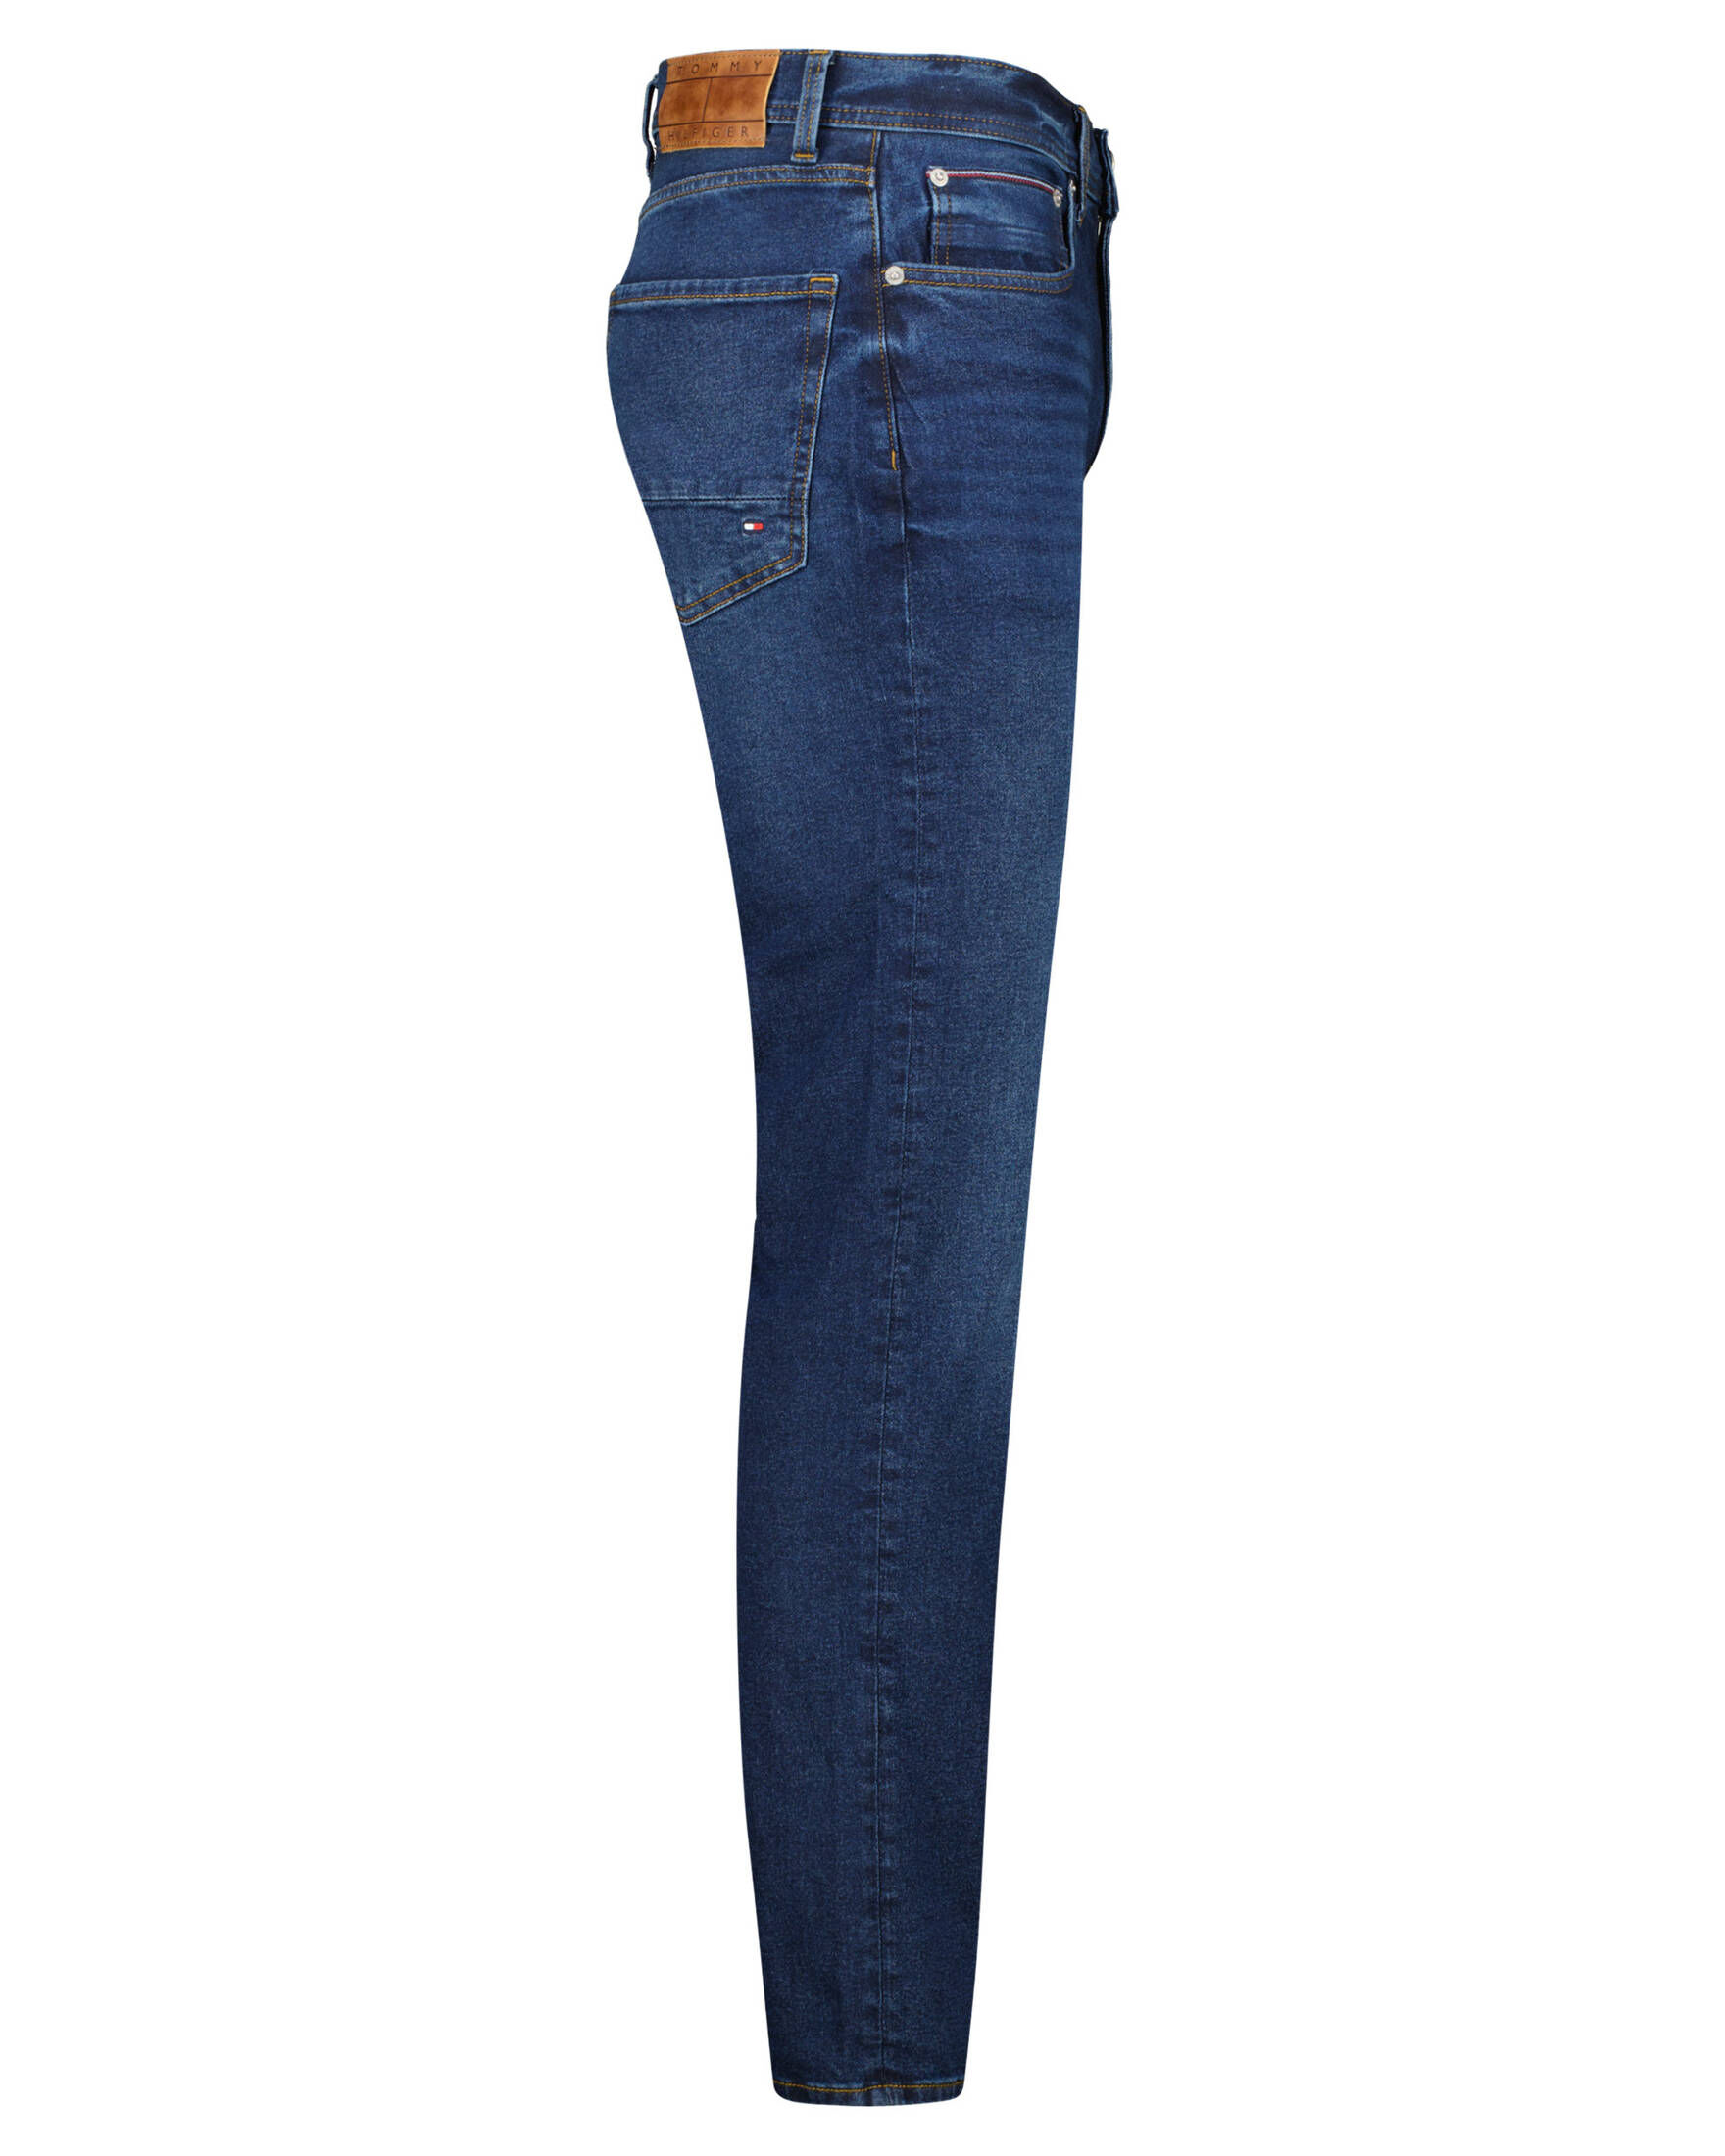 Tommy Hilfiger Herren Jeans DENTON TH STR STERNE Straight Fit kaufen |  engelhorn